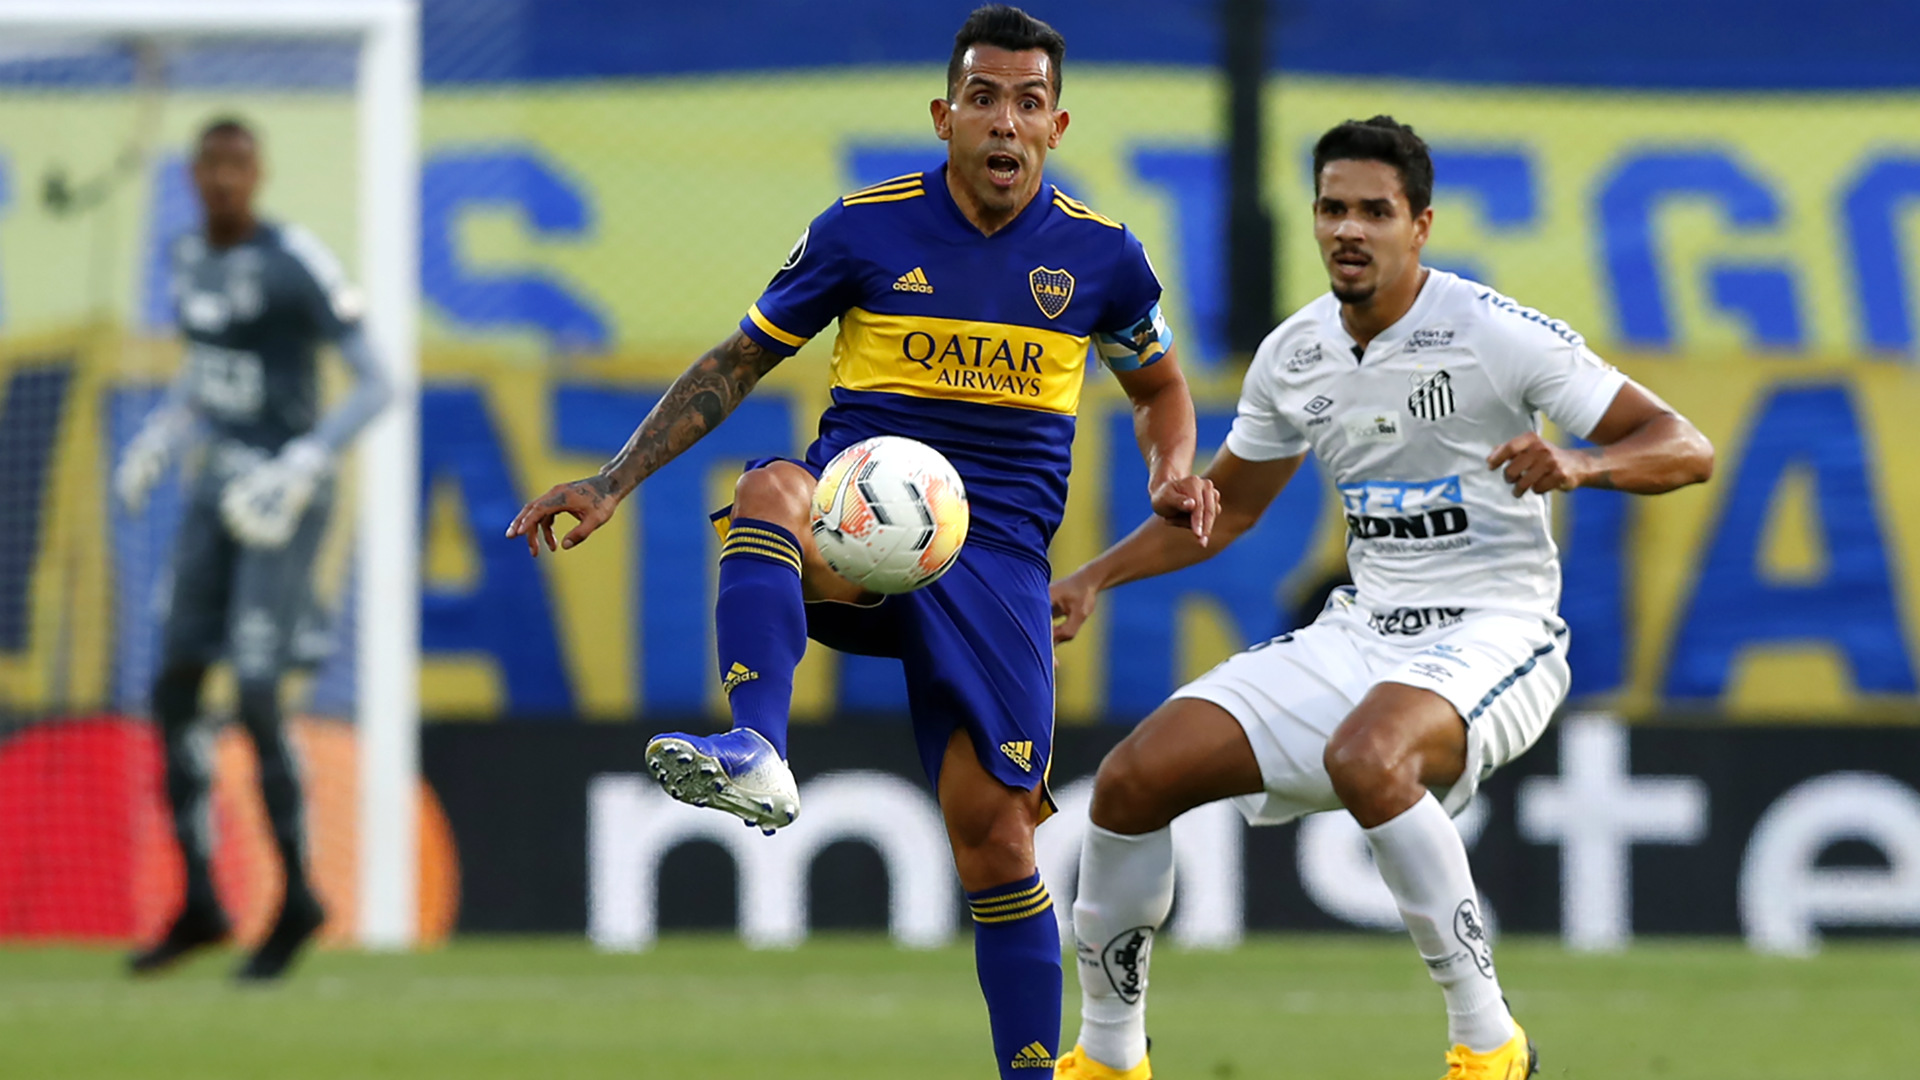 En el partido de ida por la fecha 2 jugado en La Bombonera, Boca superó a los brasileños por 2-0 con goles de Carlos Tevez y Sebastián Villa.